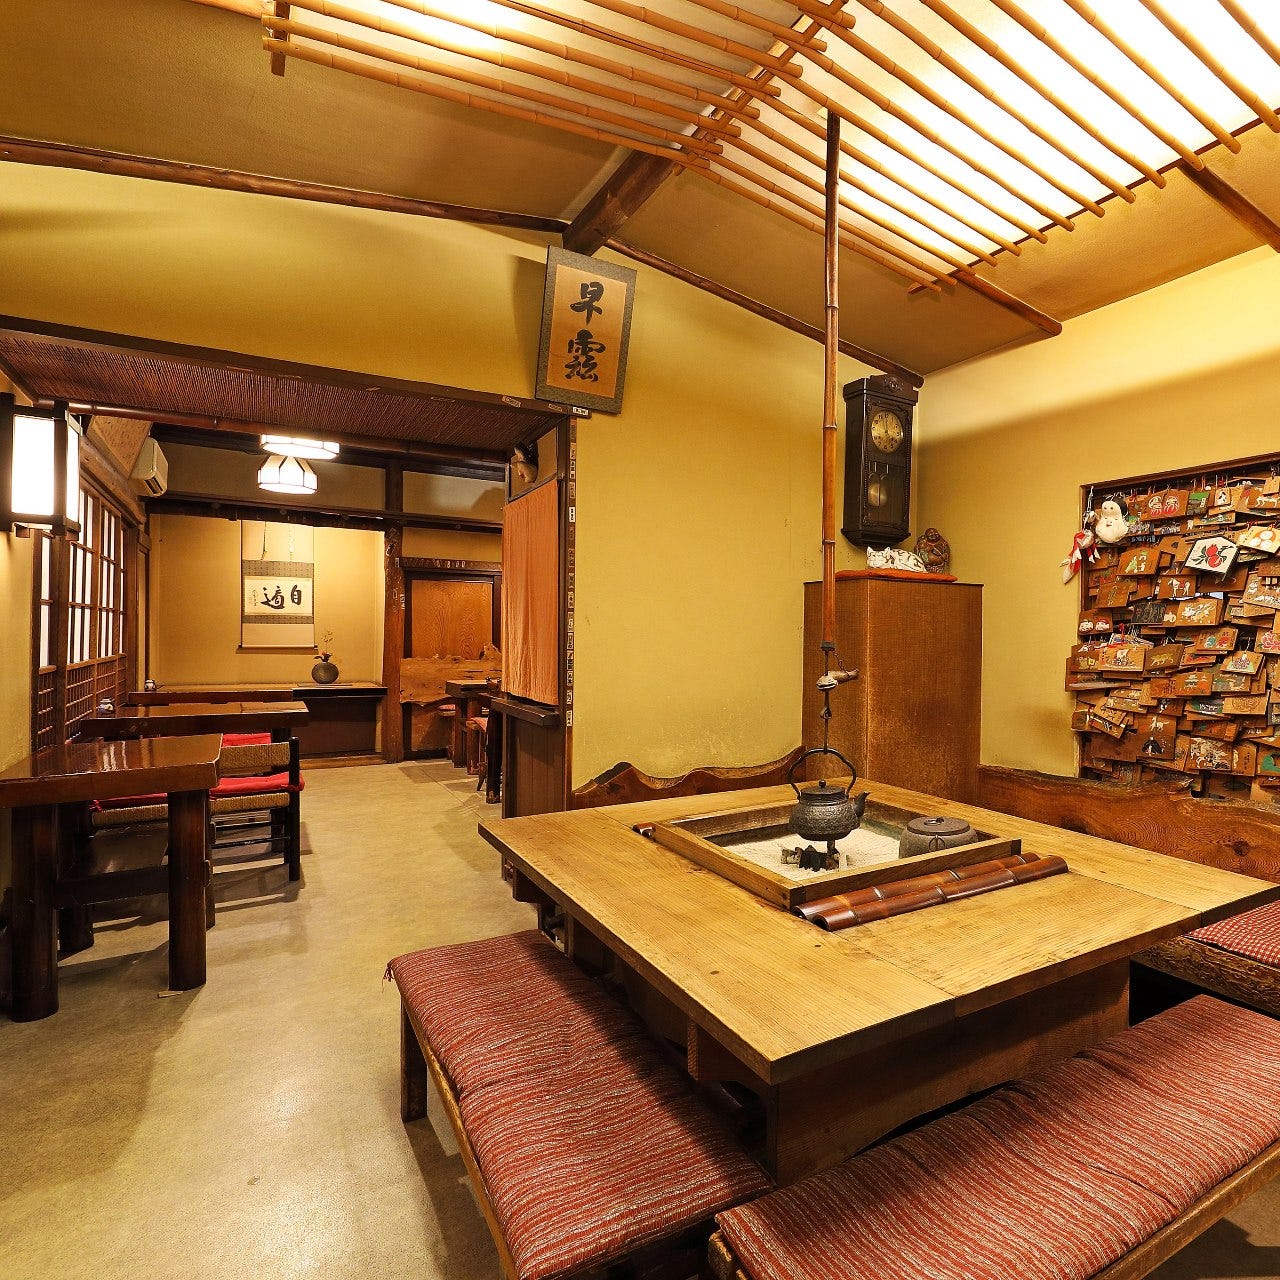 １階のお席は、囲炉裏の席など懐かしい日本情緒も味わえます。